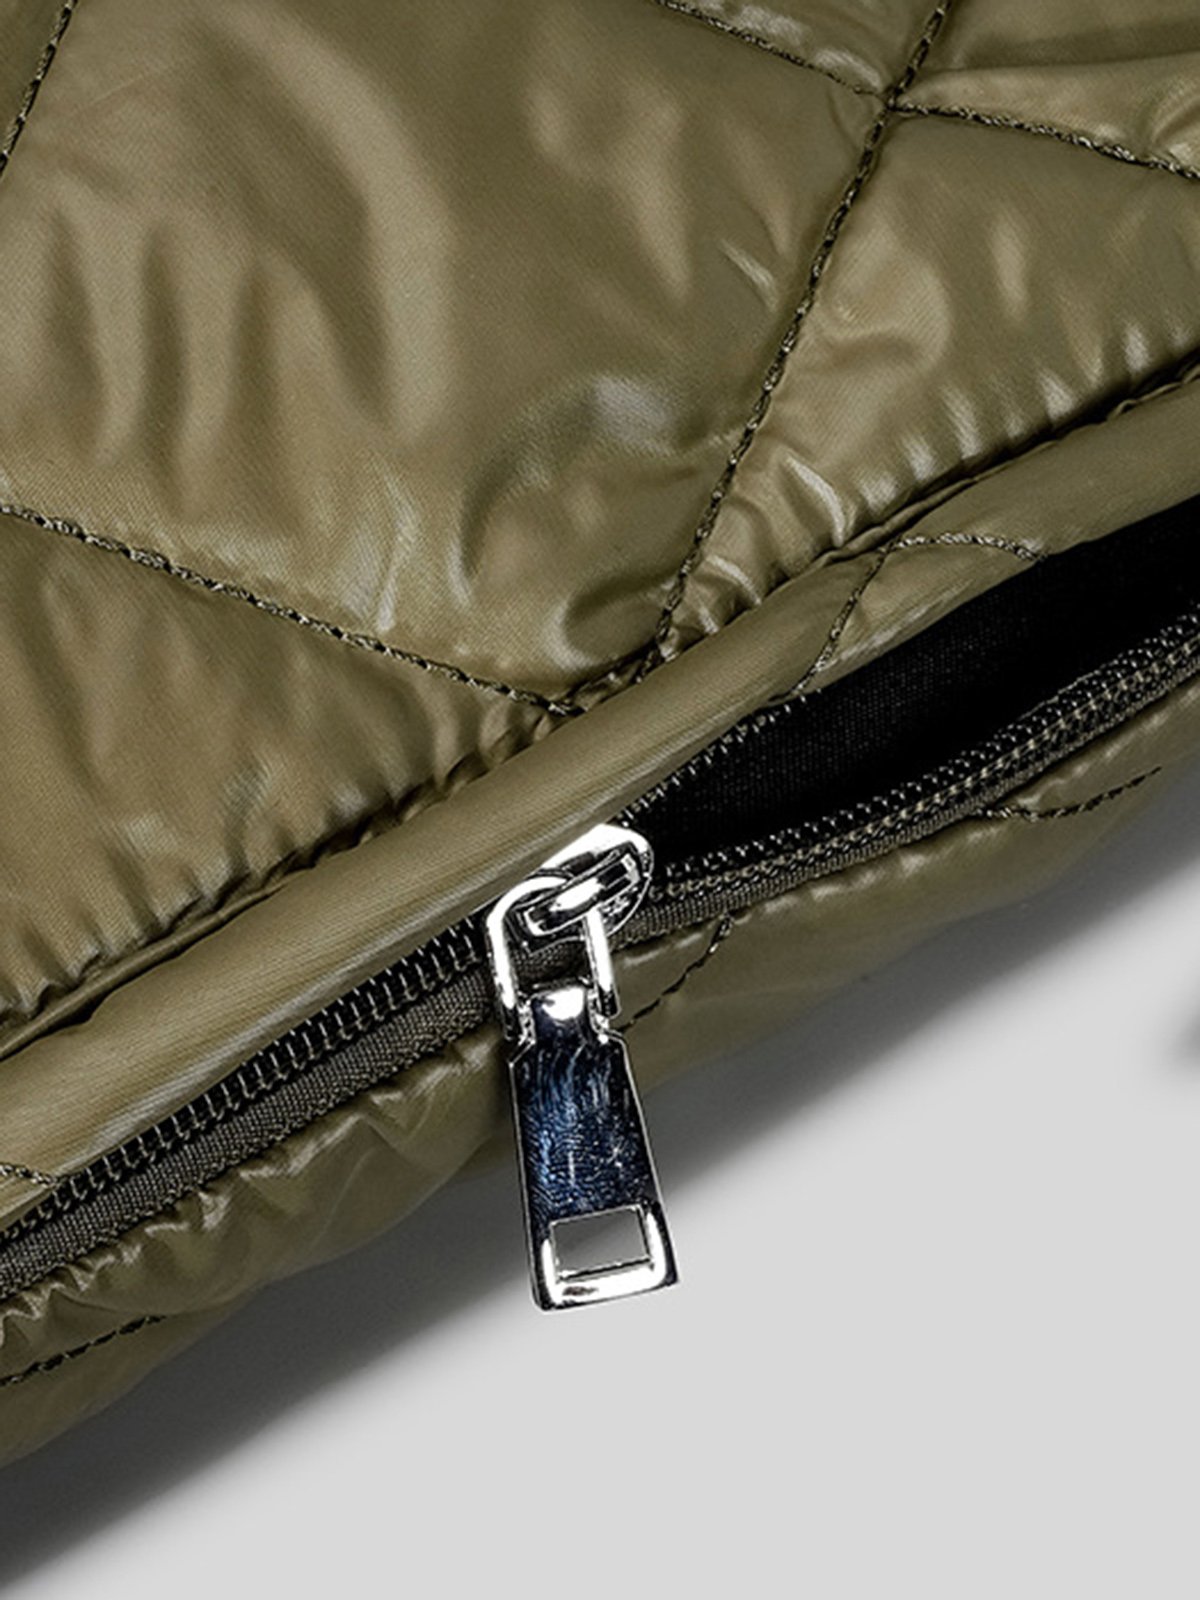 Large Capacity Rhombus Shoulder Bag Nylon Crossbody Tote Bag